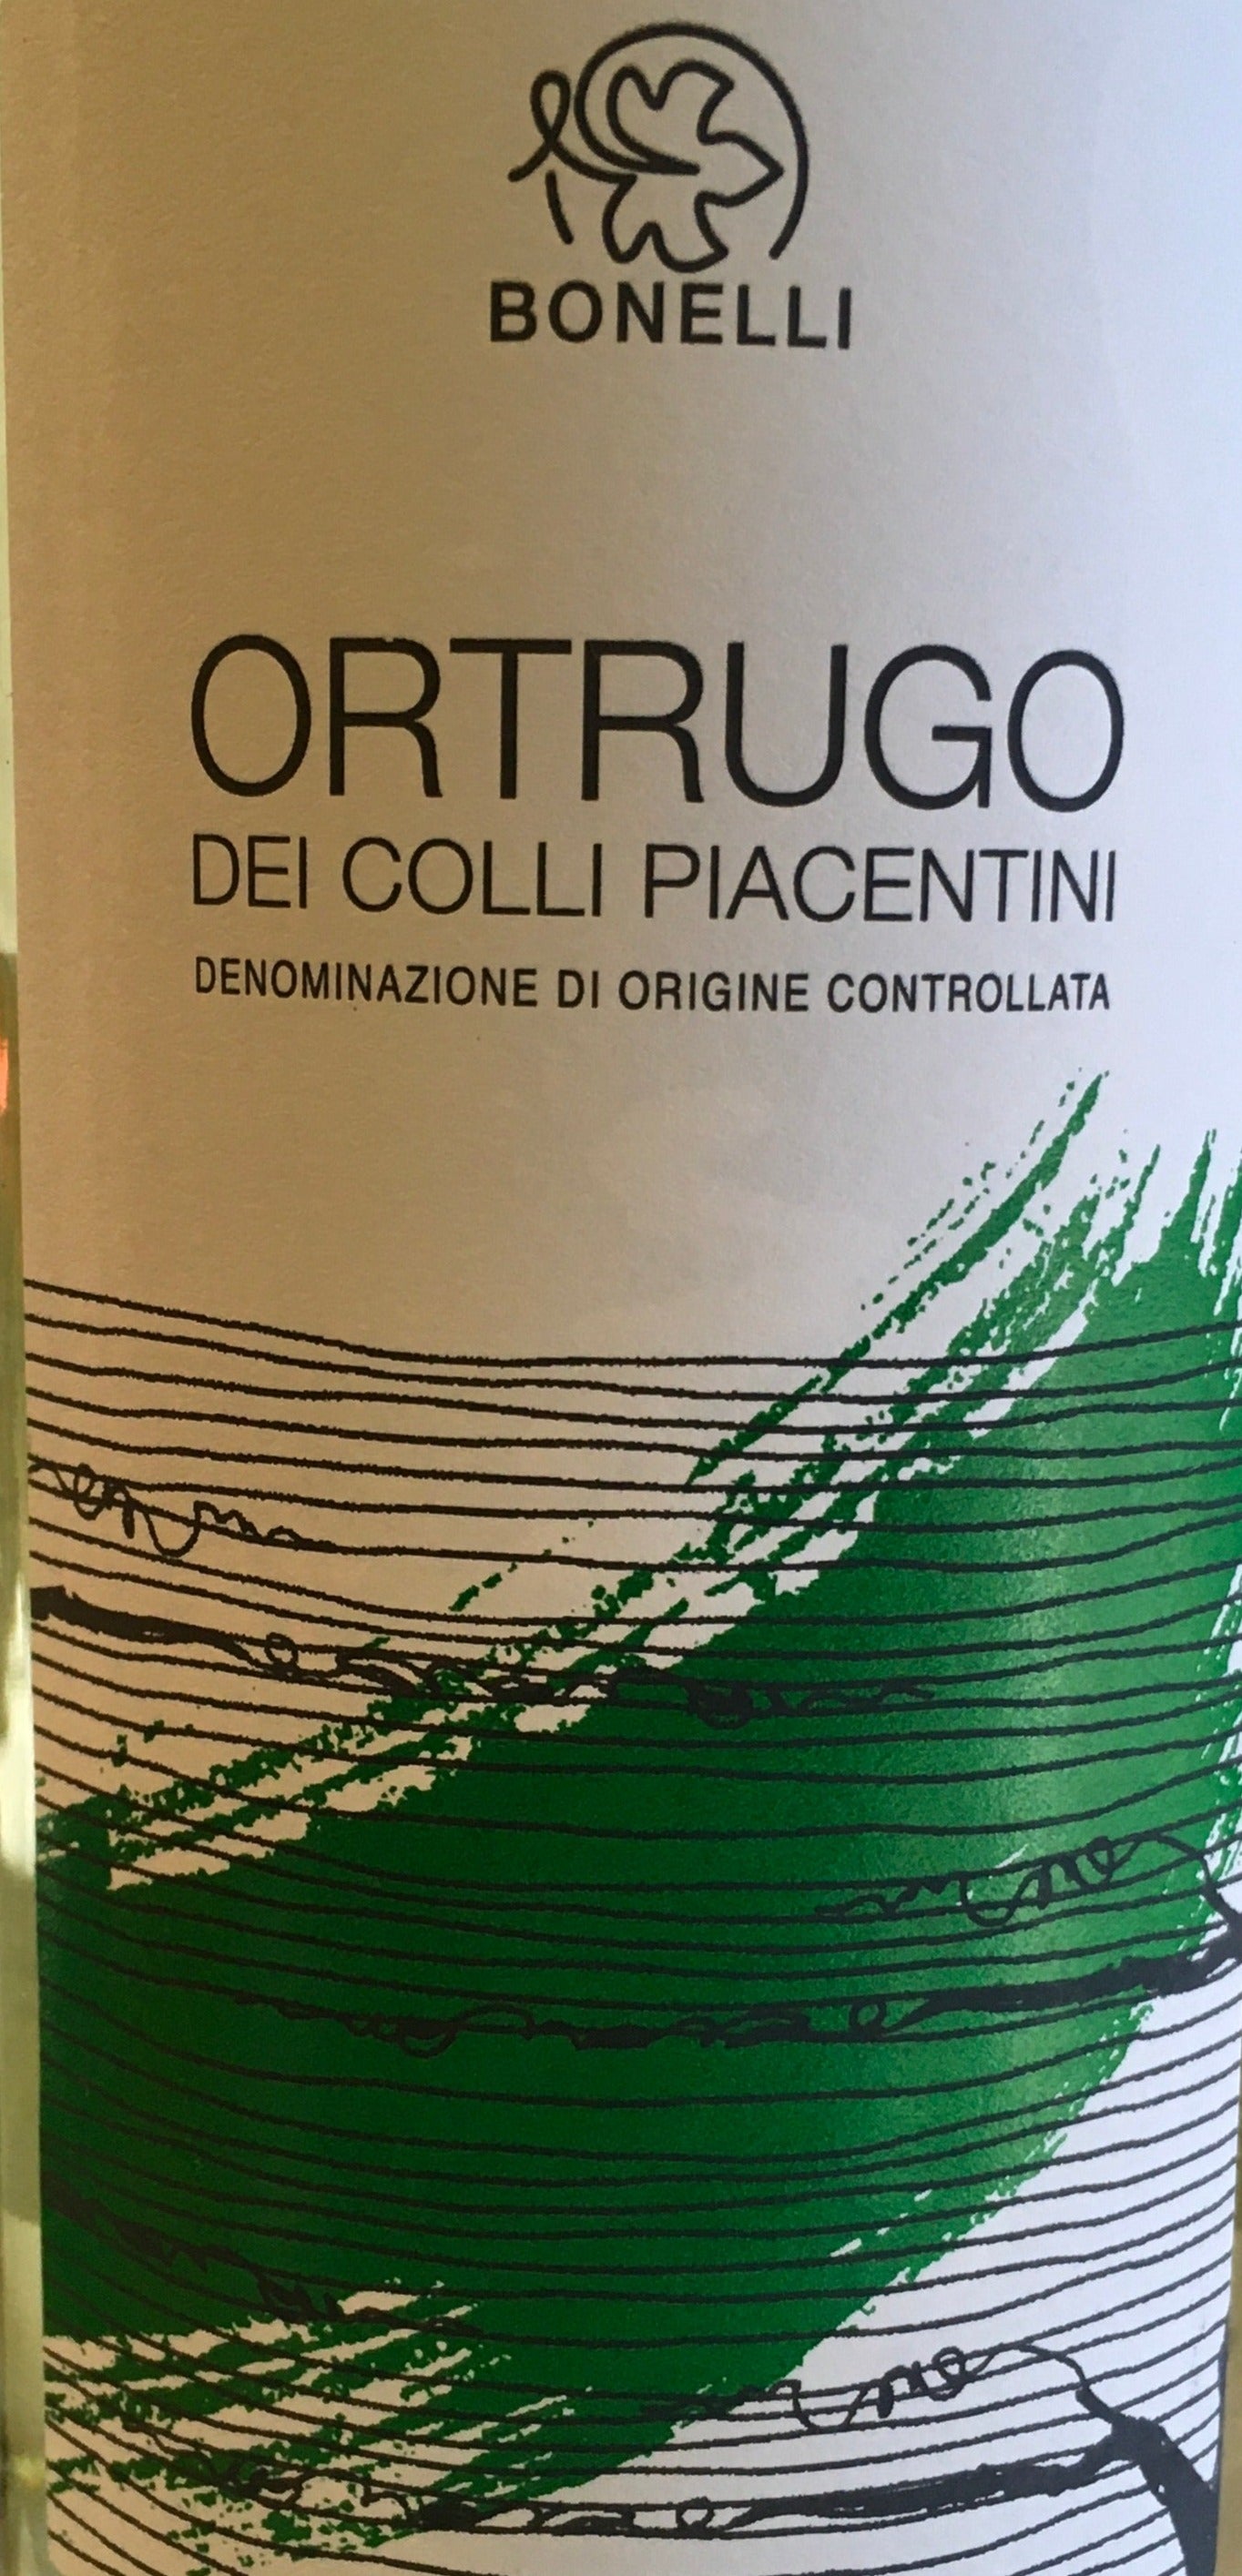 Bonelli - Ortrugo dei Colli Piacentini DOC – The Wine Feed